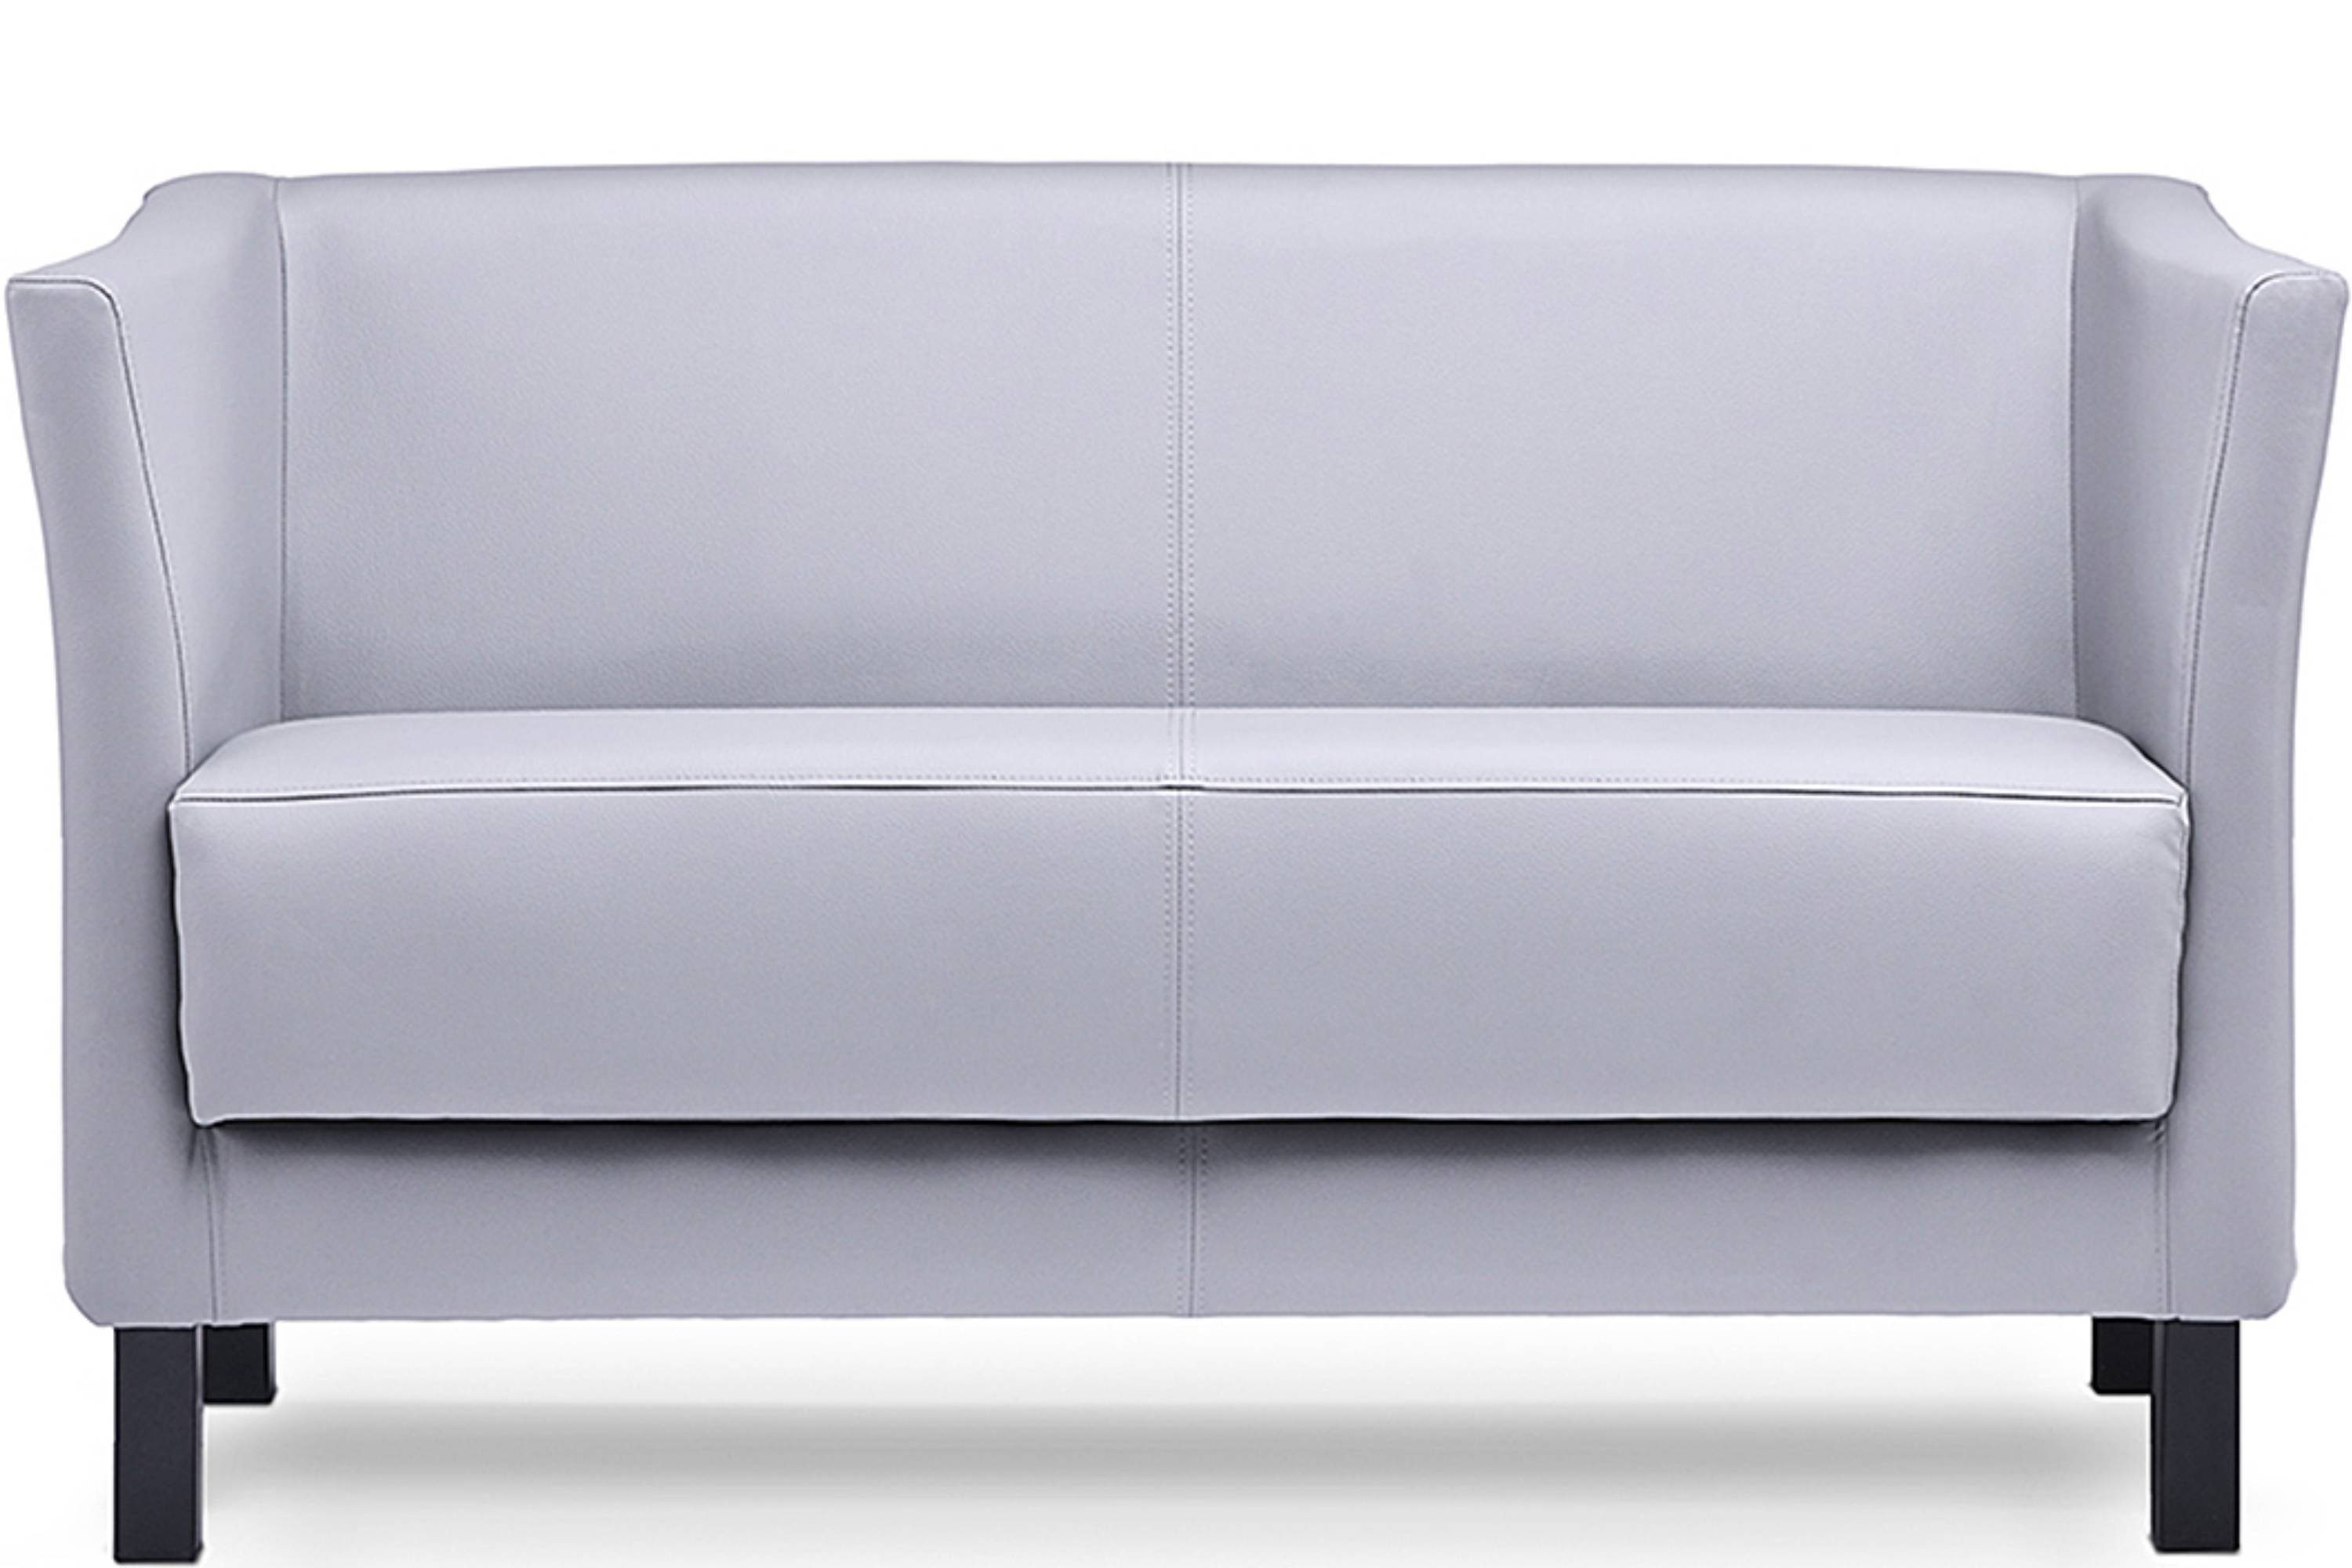 Konsimo 2-Sitzer ESPECTO Sofa 2 Personen, weiche Sitzfläche und hohe Rückenlehne, Kunstleder, hohe Massivholzbeine grau | grau